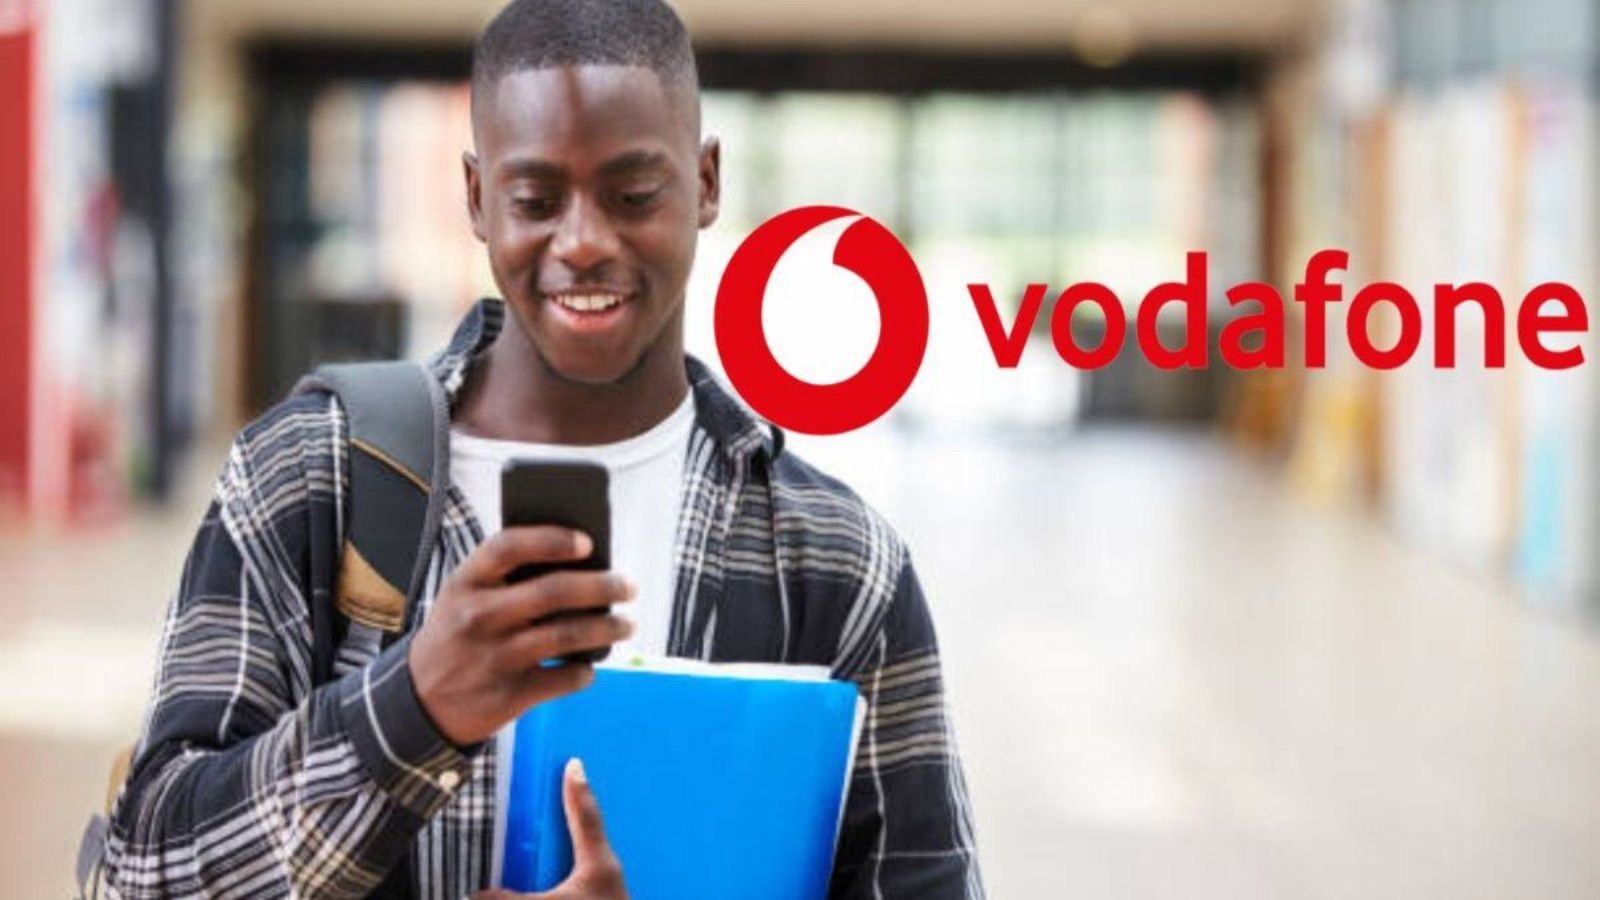 Vodafone, 2 offerte battono Iliad con un servizio gratis